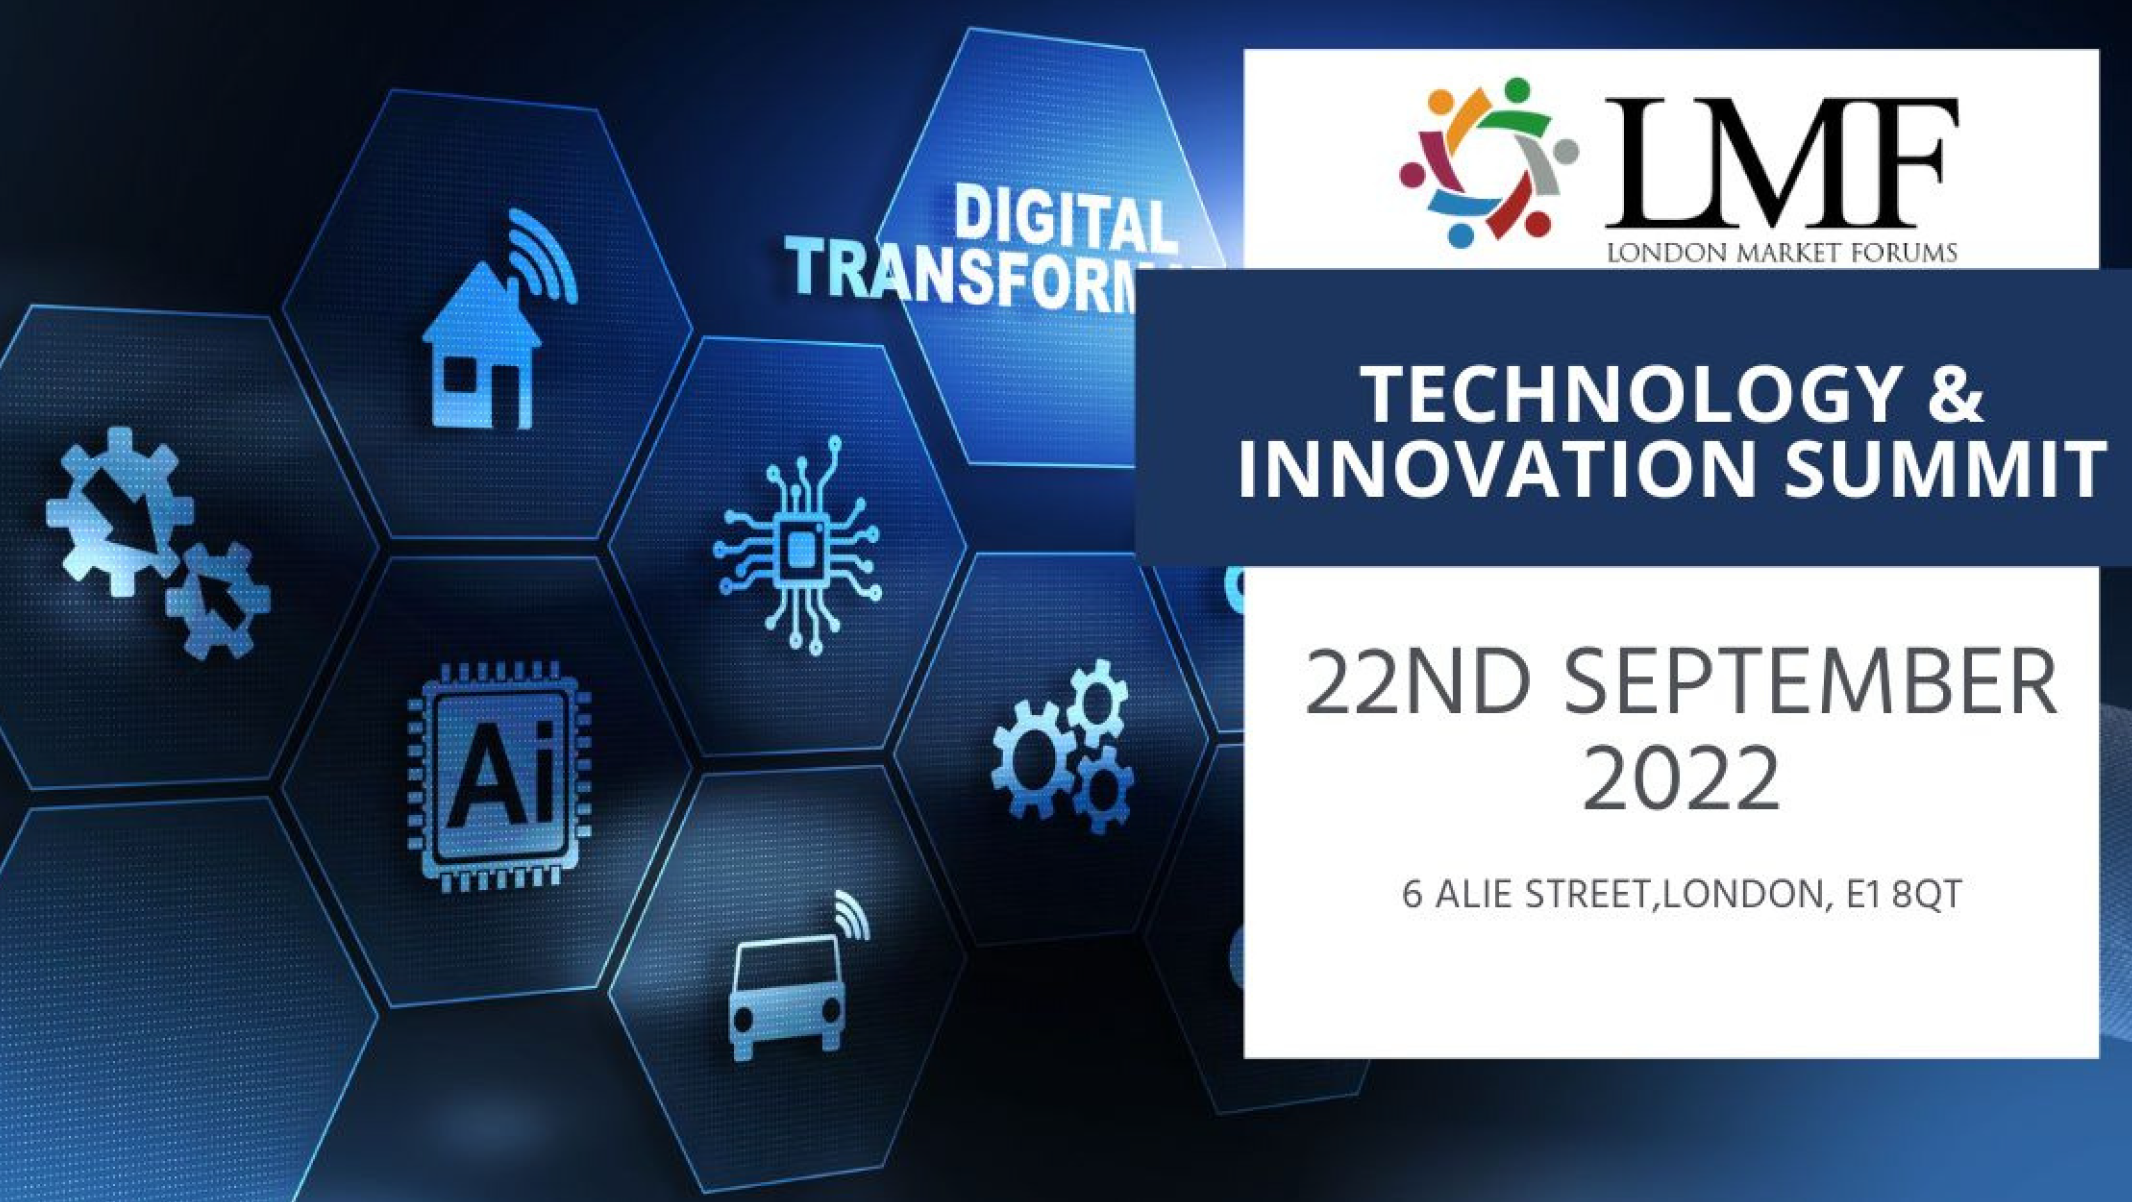 Technology & Innovation Summit